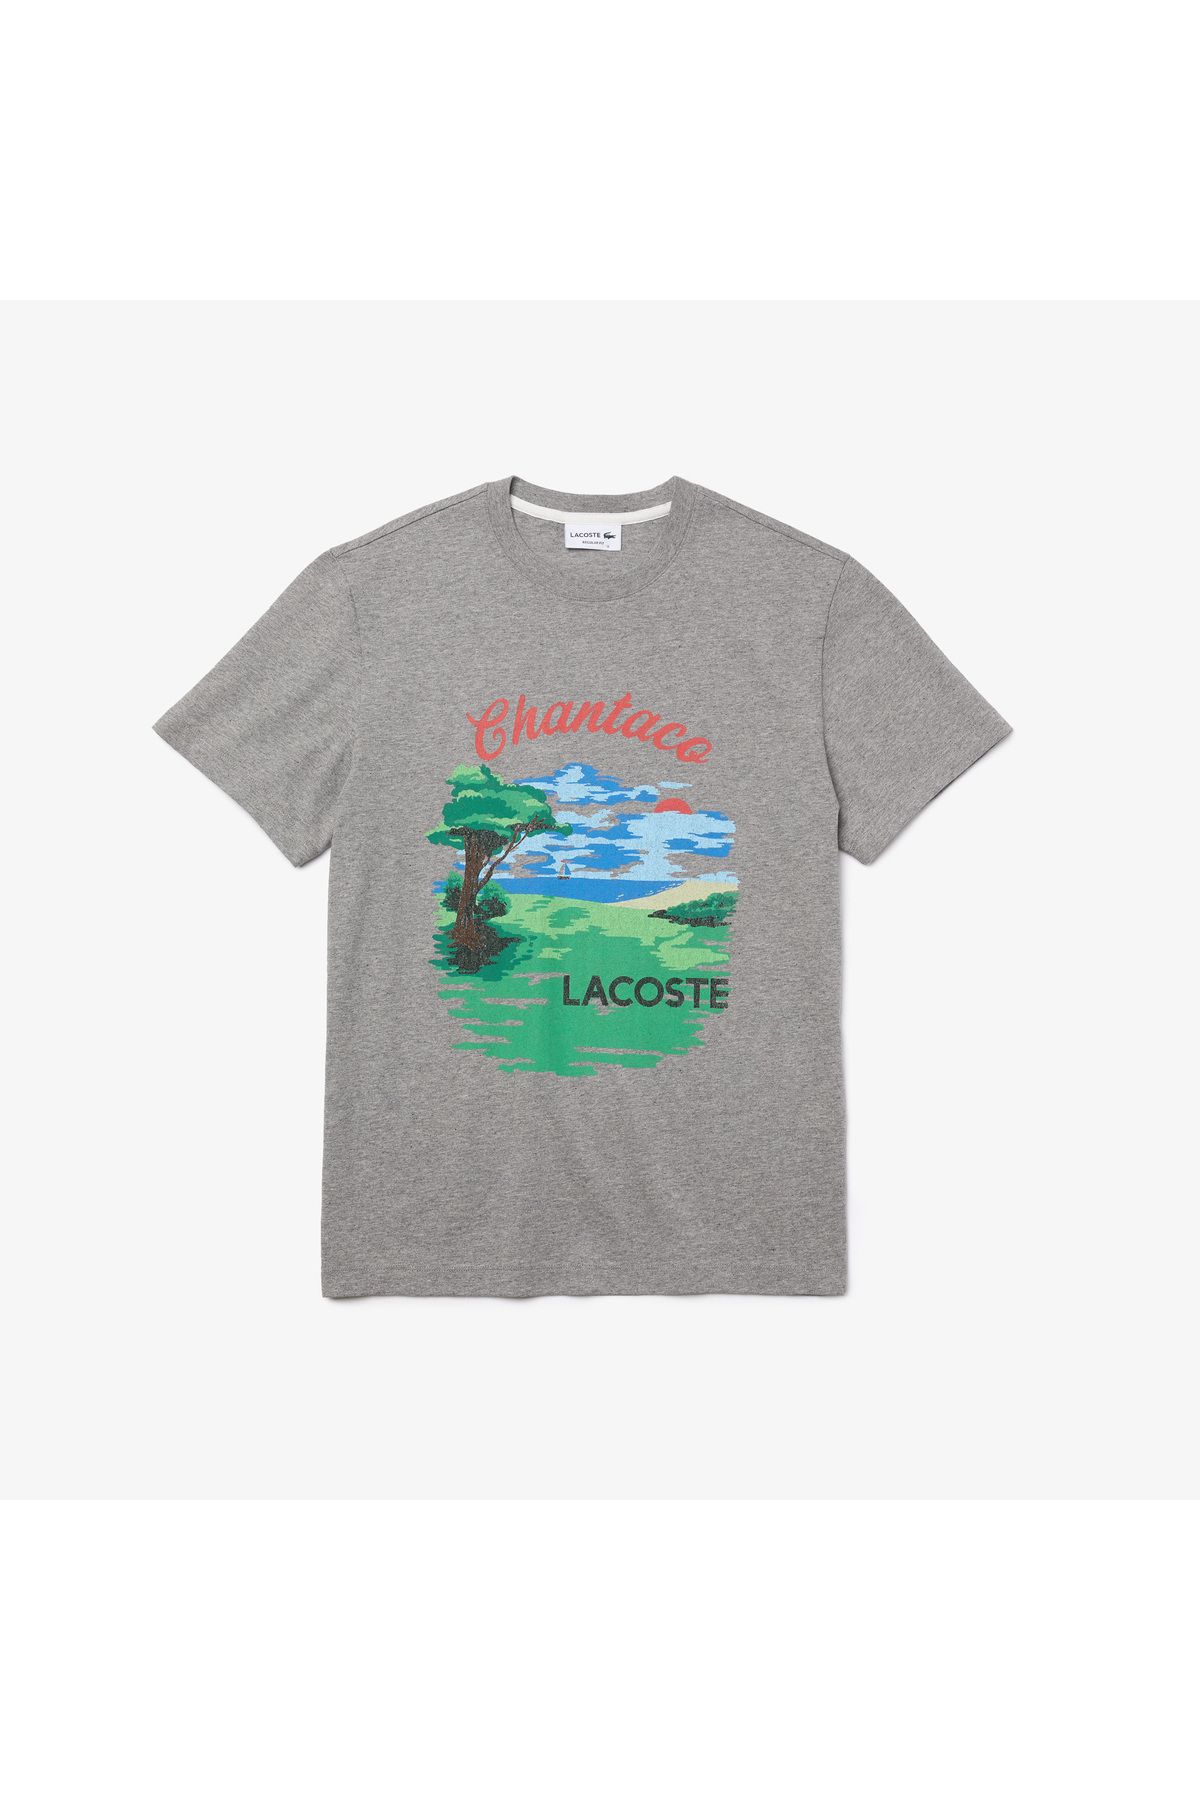 Lacoste Men?s Crew Neck Landscape Print Cotton T-shirt